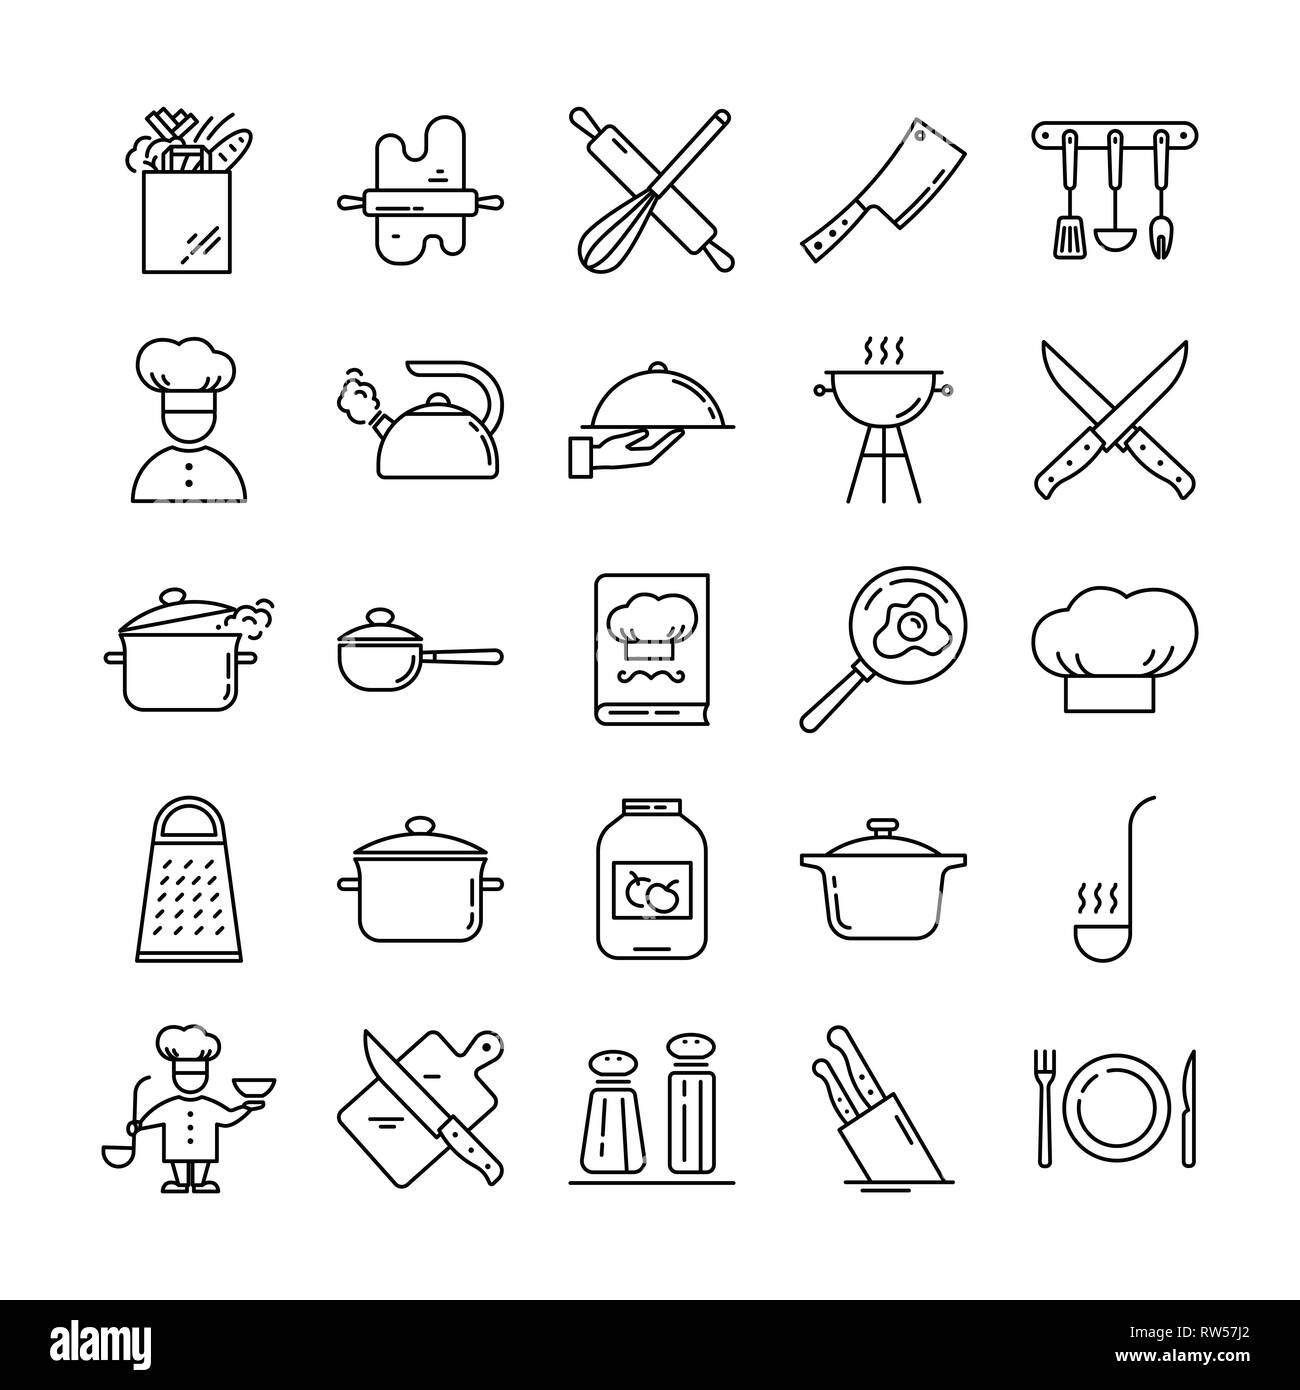 https://c8.alamy.com/compes/rw57j2/conjunto-de-iconos-de-lineas-limpias-con-diversos-utensilios-de-cocina-y-objetos-relacionados-rw57j2.jpg